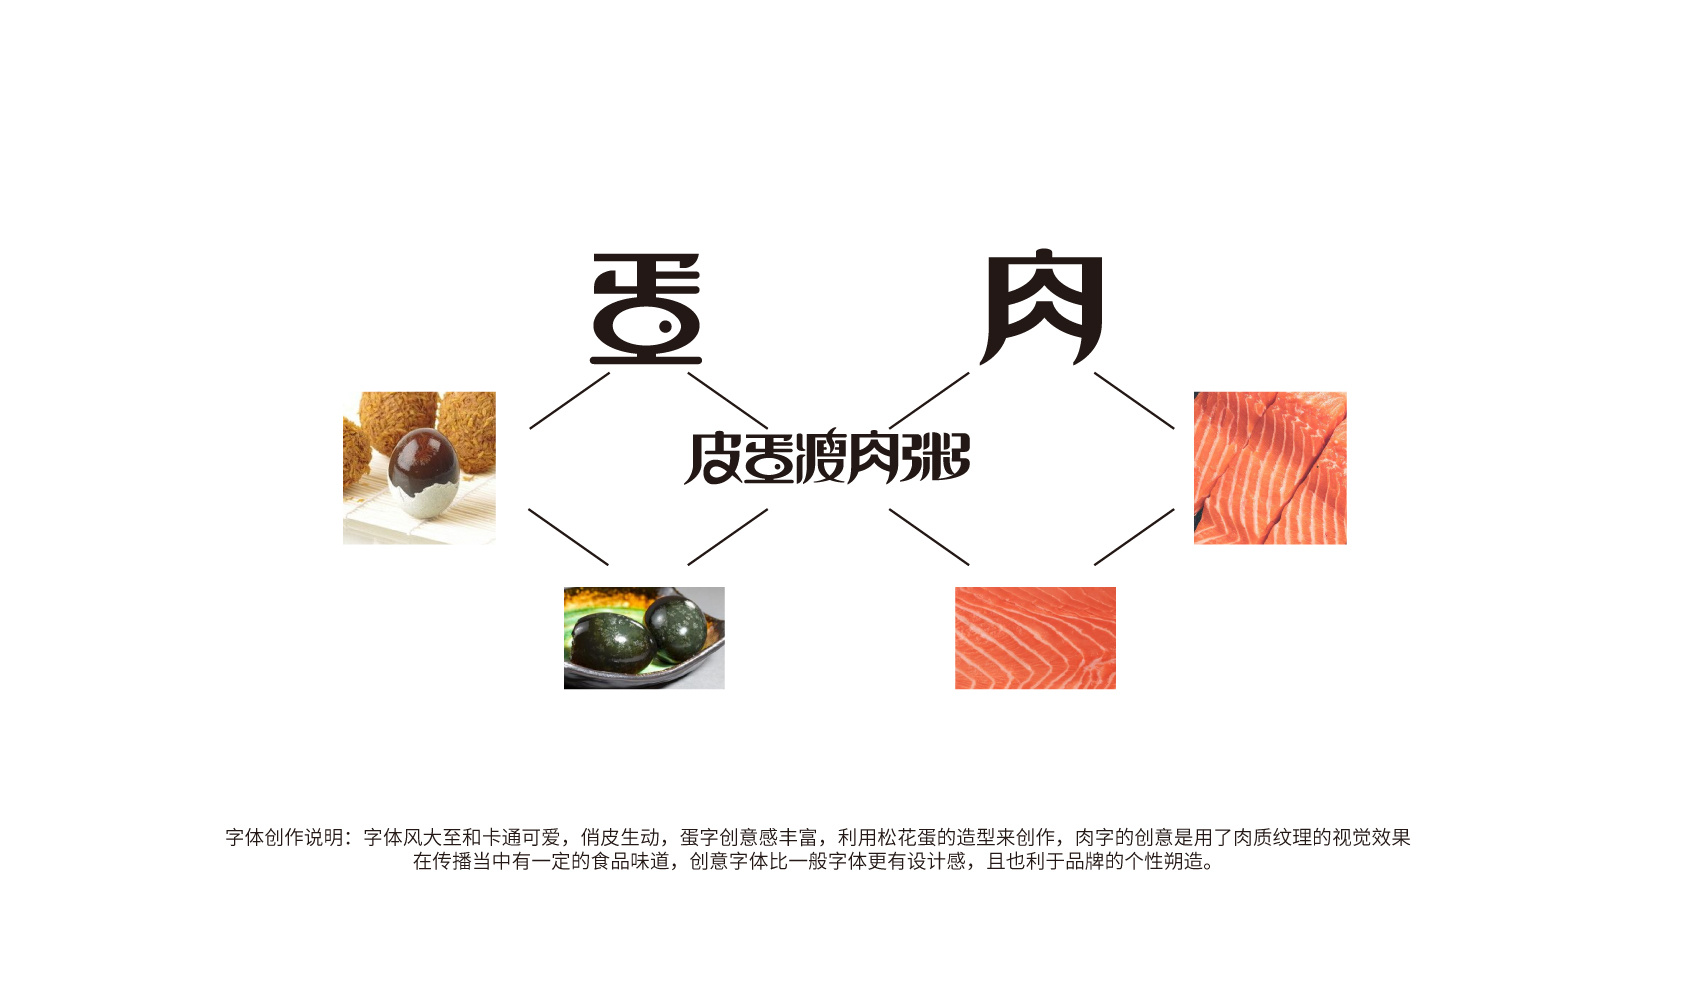 食品包装设计 ｜食品logo设计 ｜食品VI设计平面设计